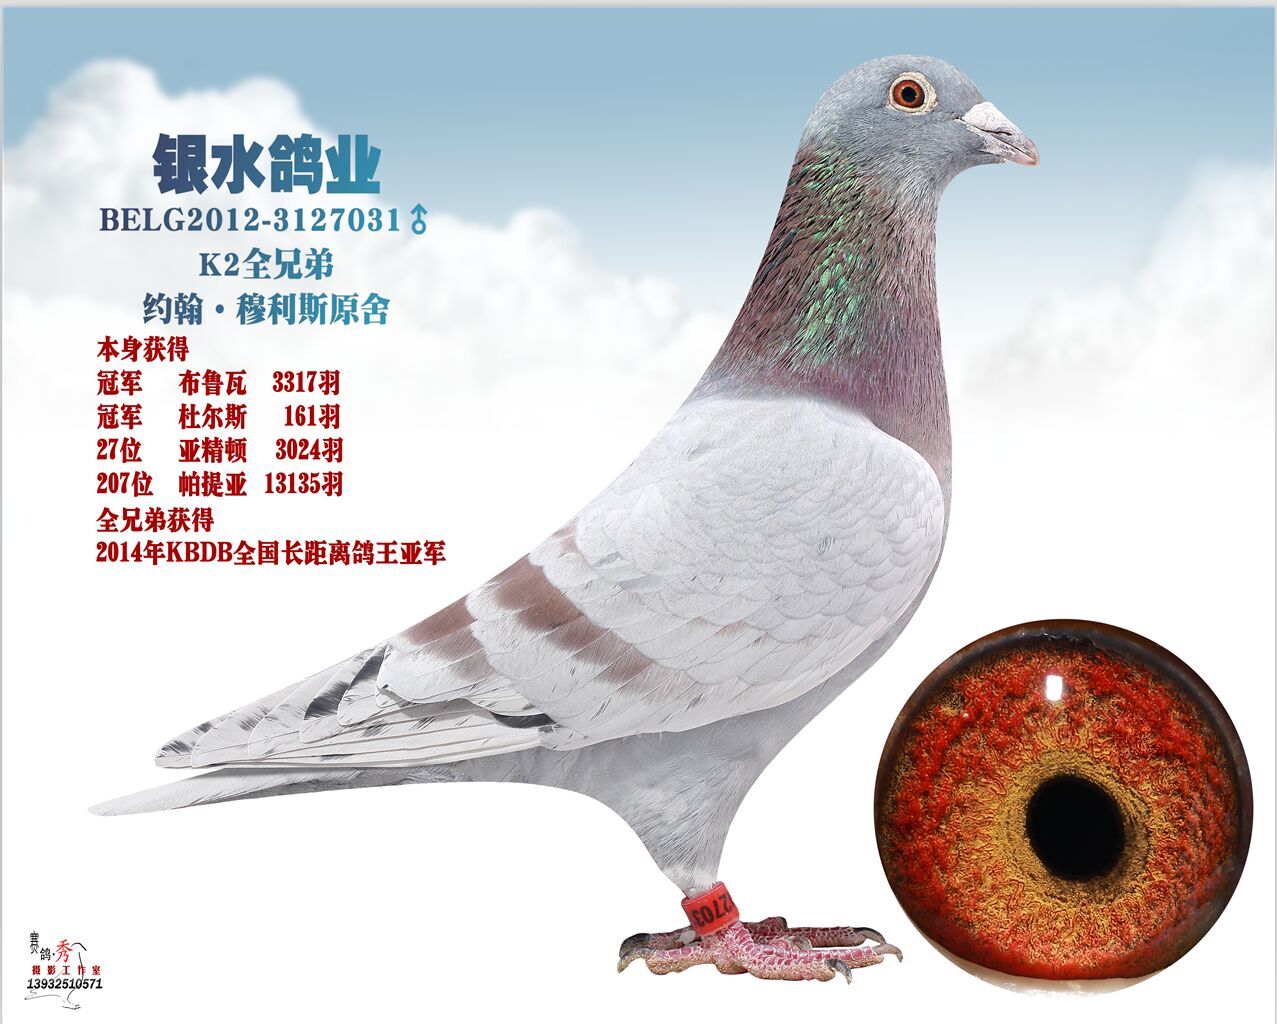 唐山银水鸽业种鸽图片图片